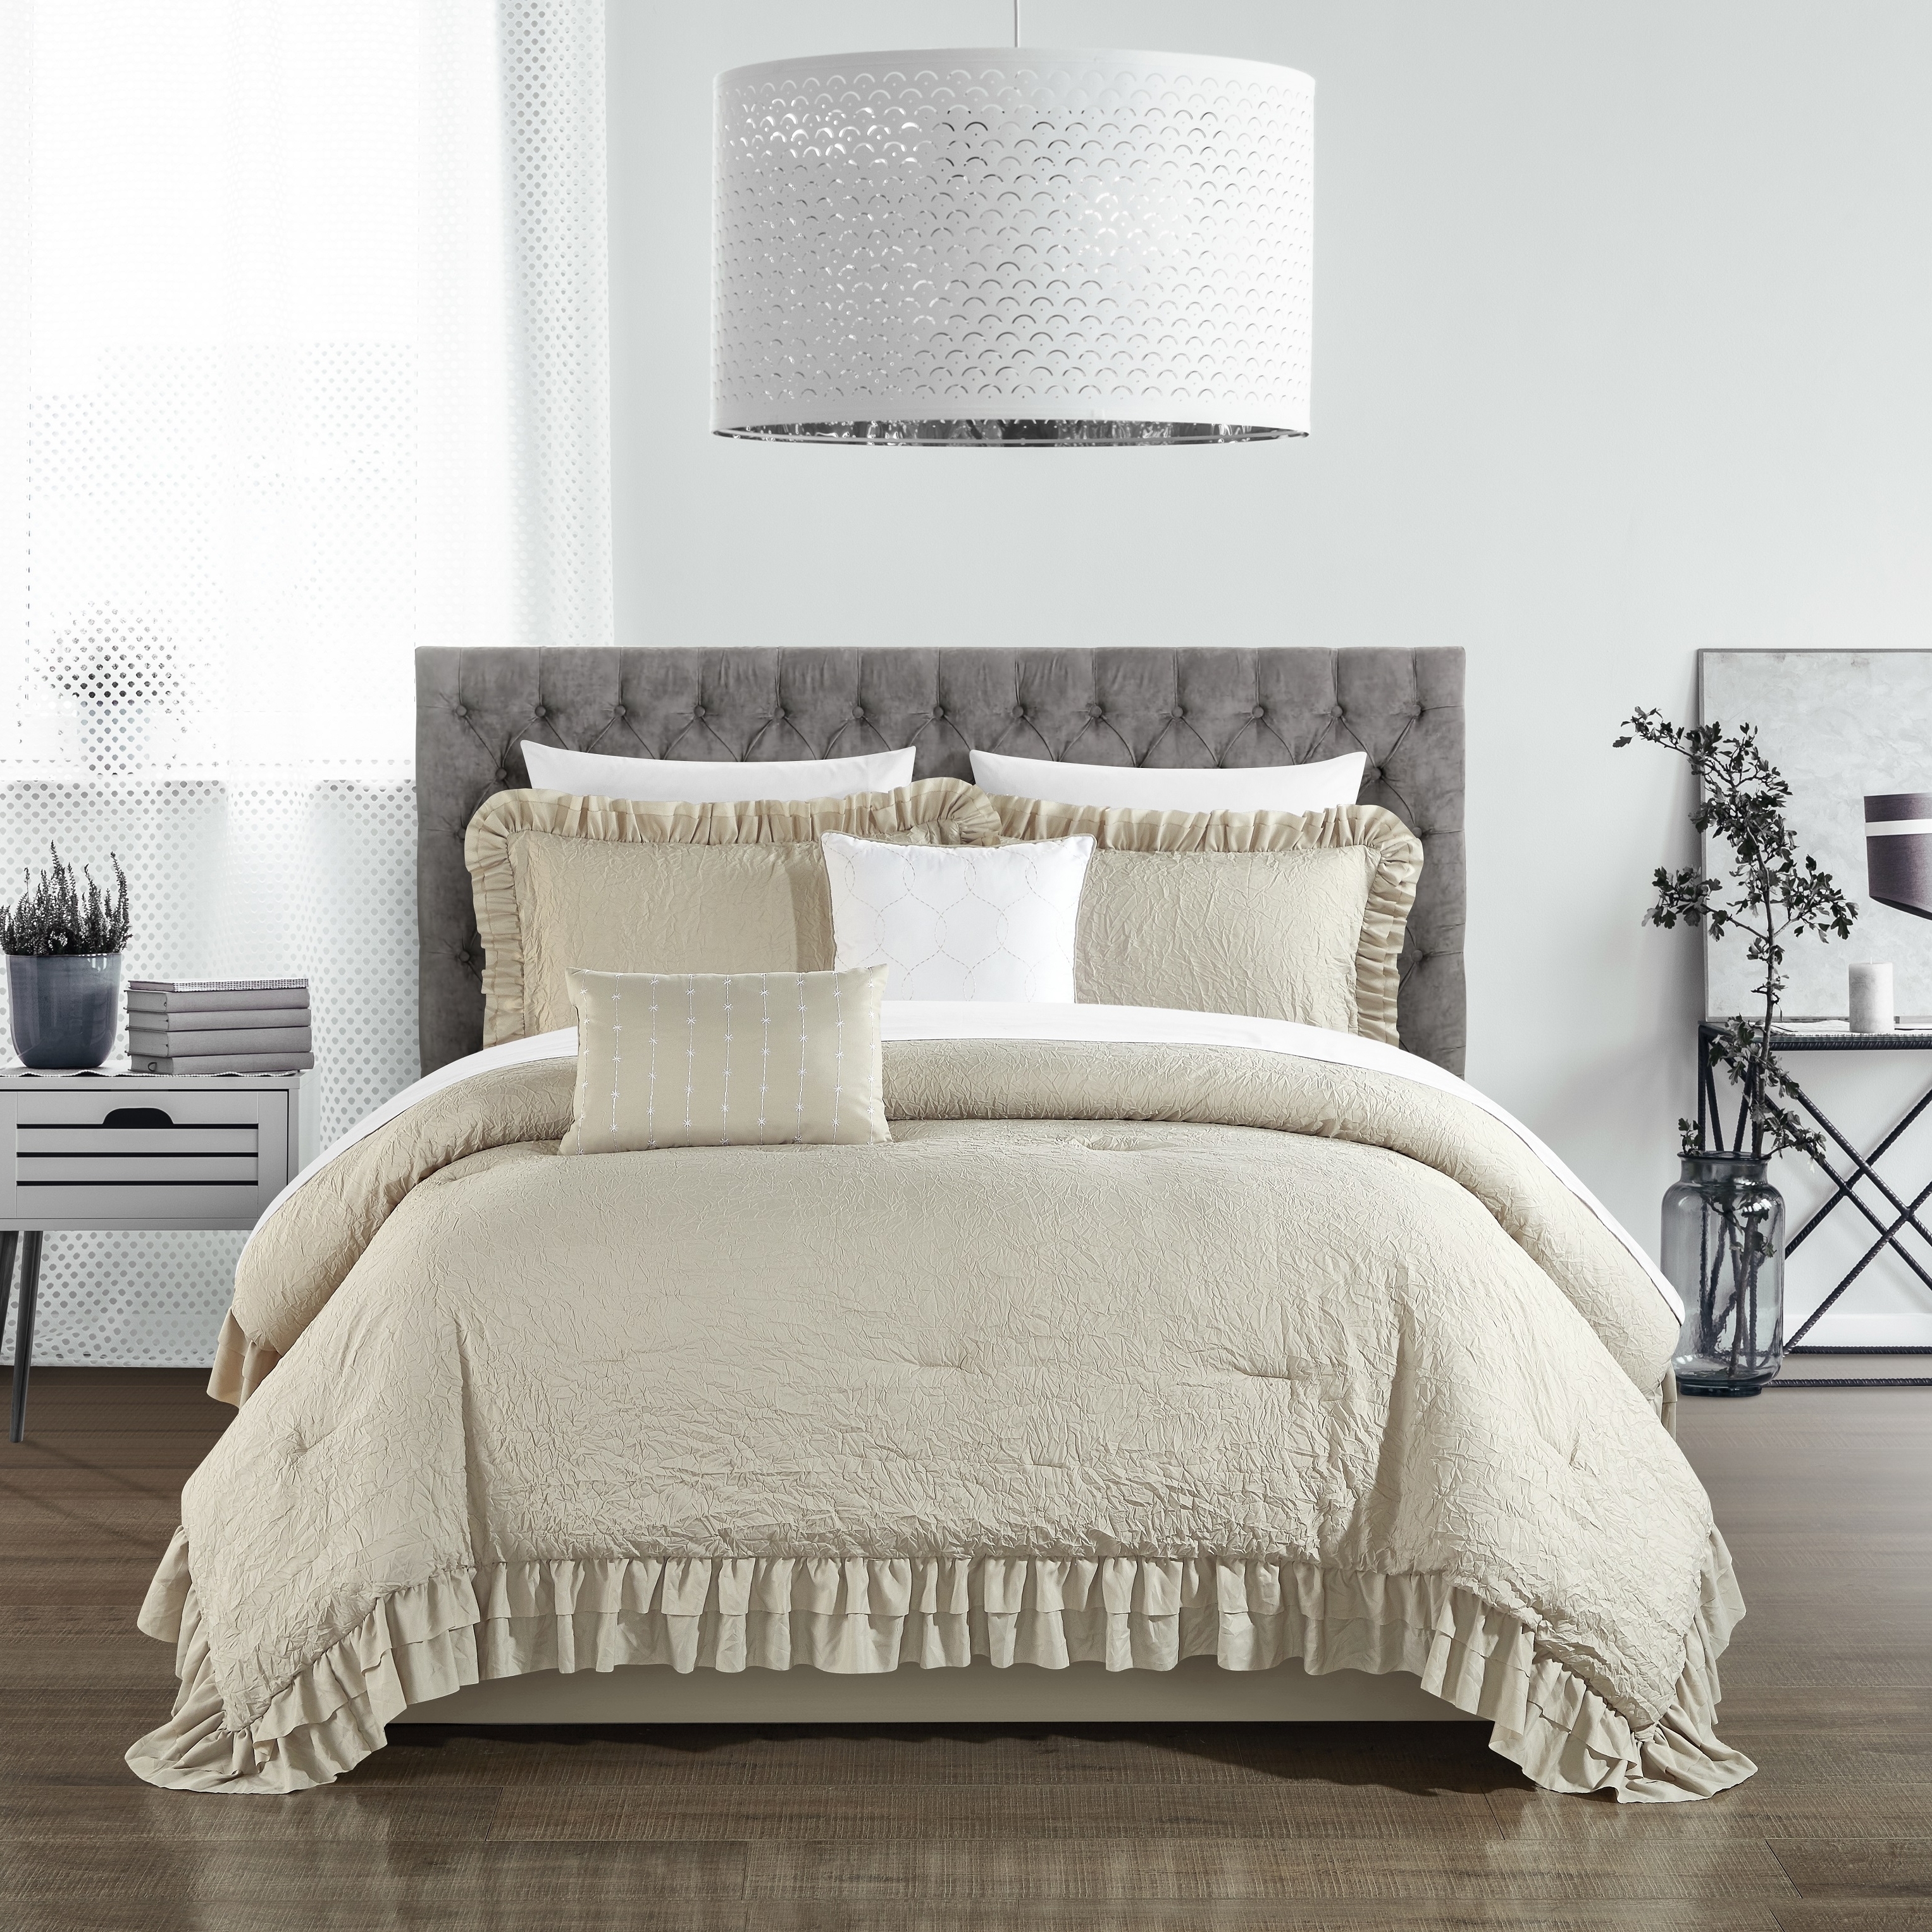 5 Piece Kensley Comforter Set Washed Crinkle Ruffled Flange Border Design Bedding - Beige, King